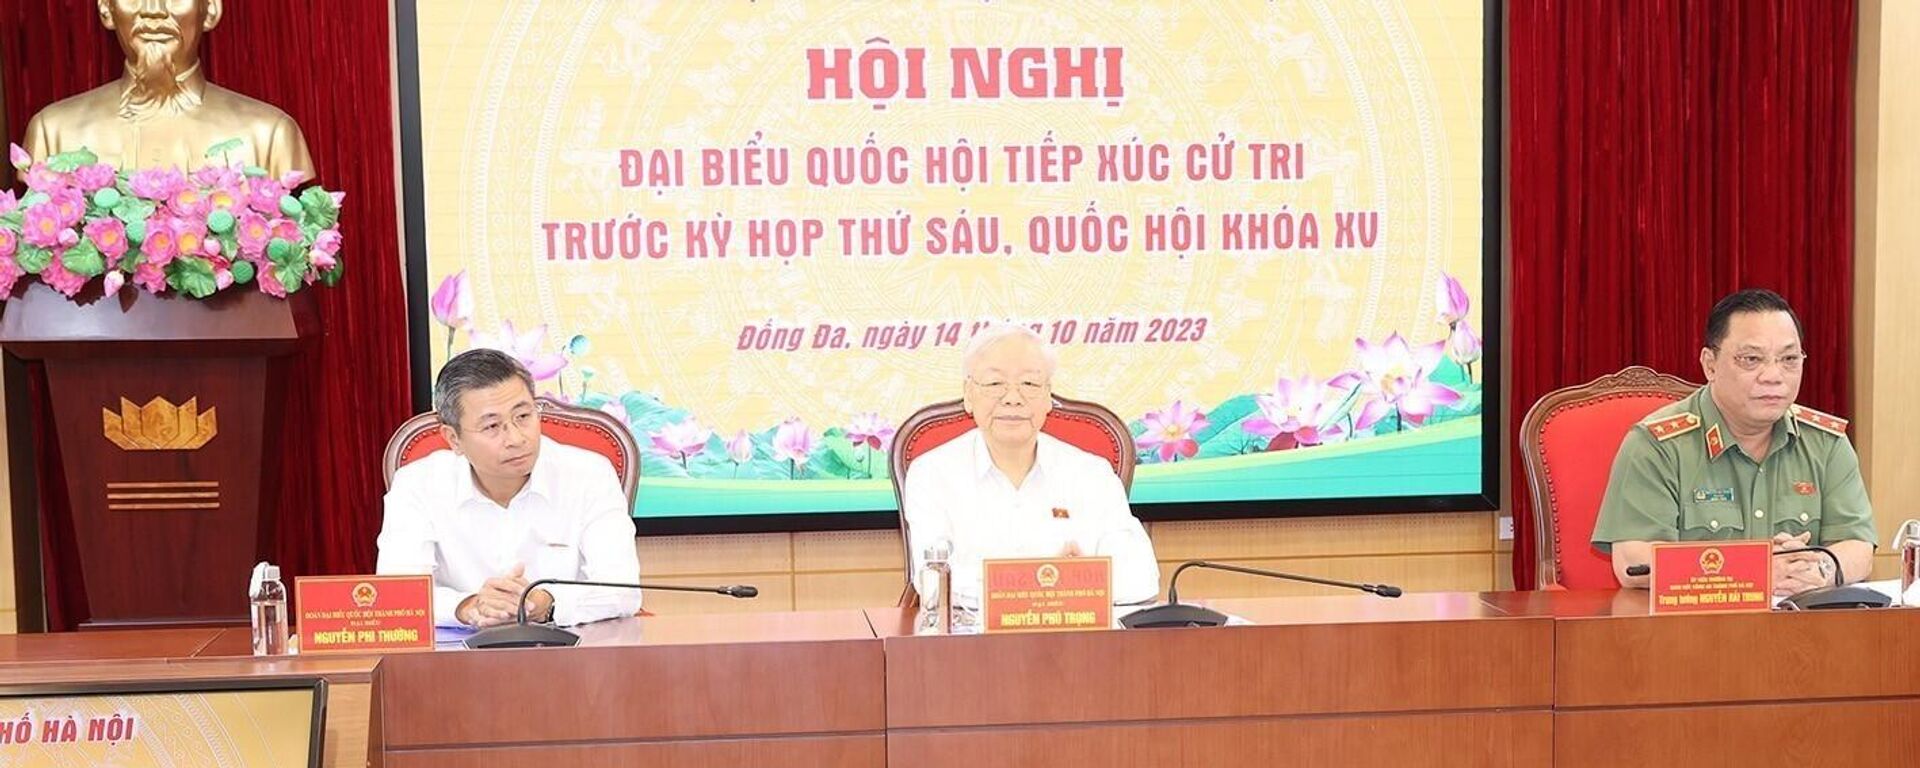  Tổng Bí thư Nguyễn Phú Trọng tiếp xúc cử tri thành phố Hà Nội trước kỳ họp thứ sáu, Quốc hội khoá XV - Sputnik Việt Nam, 1920, 14.10.2023